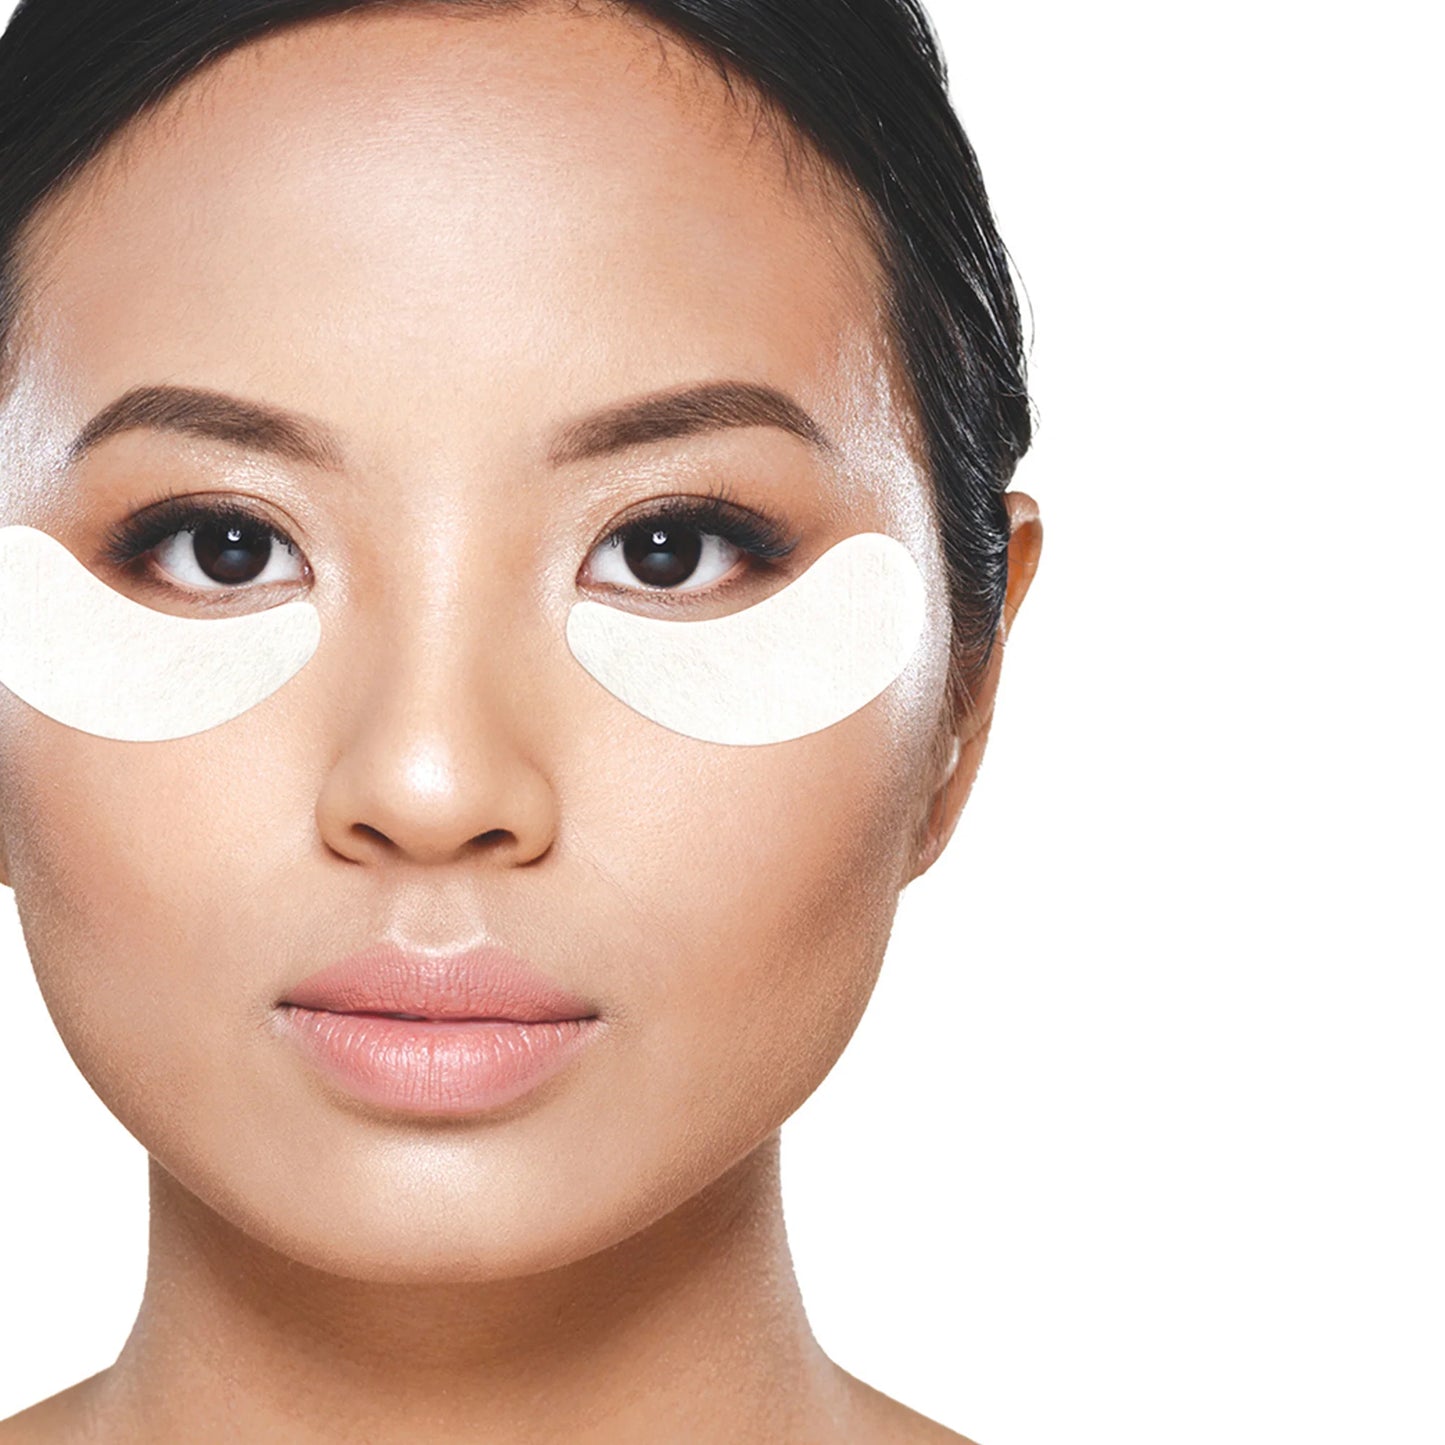 Beautypro - Retinol & Vitamin C Eye Mask